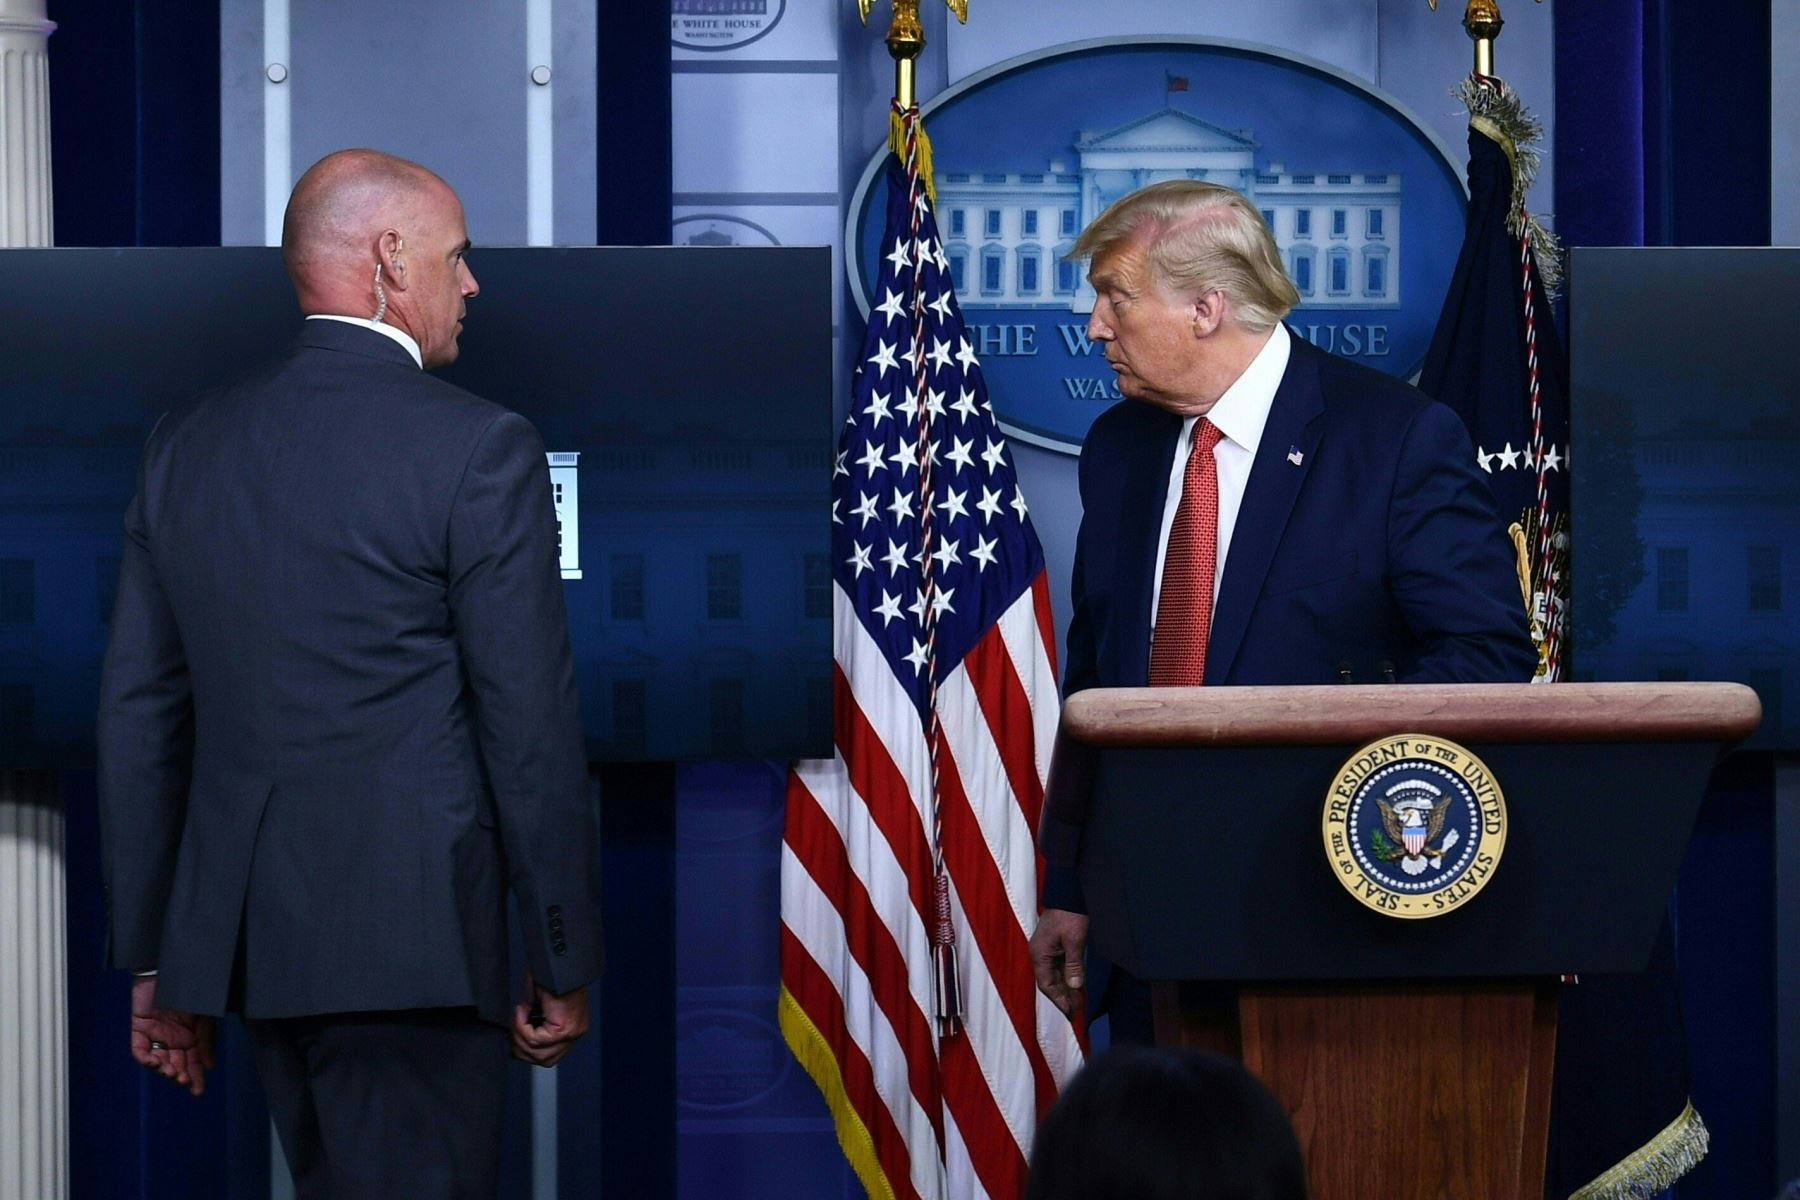 El presidente de los Estados Unidos, Donald Trump, está siendo escoltado por un miembro del Servicio Secreto de la Sala Brady Briefing de la Casa Blanca en Washington. Foto: AFP